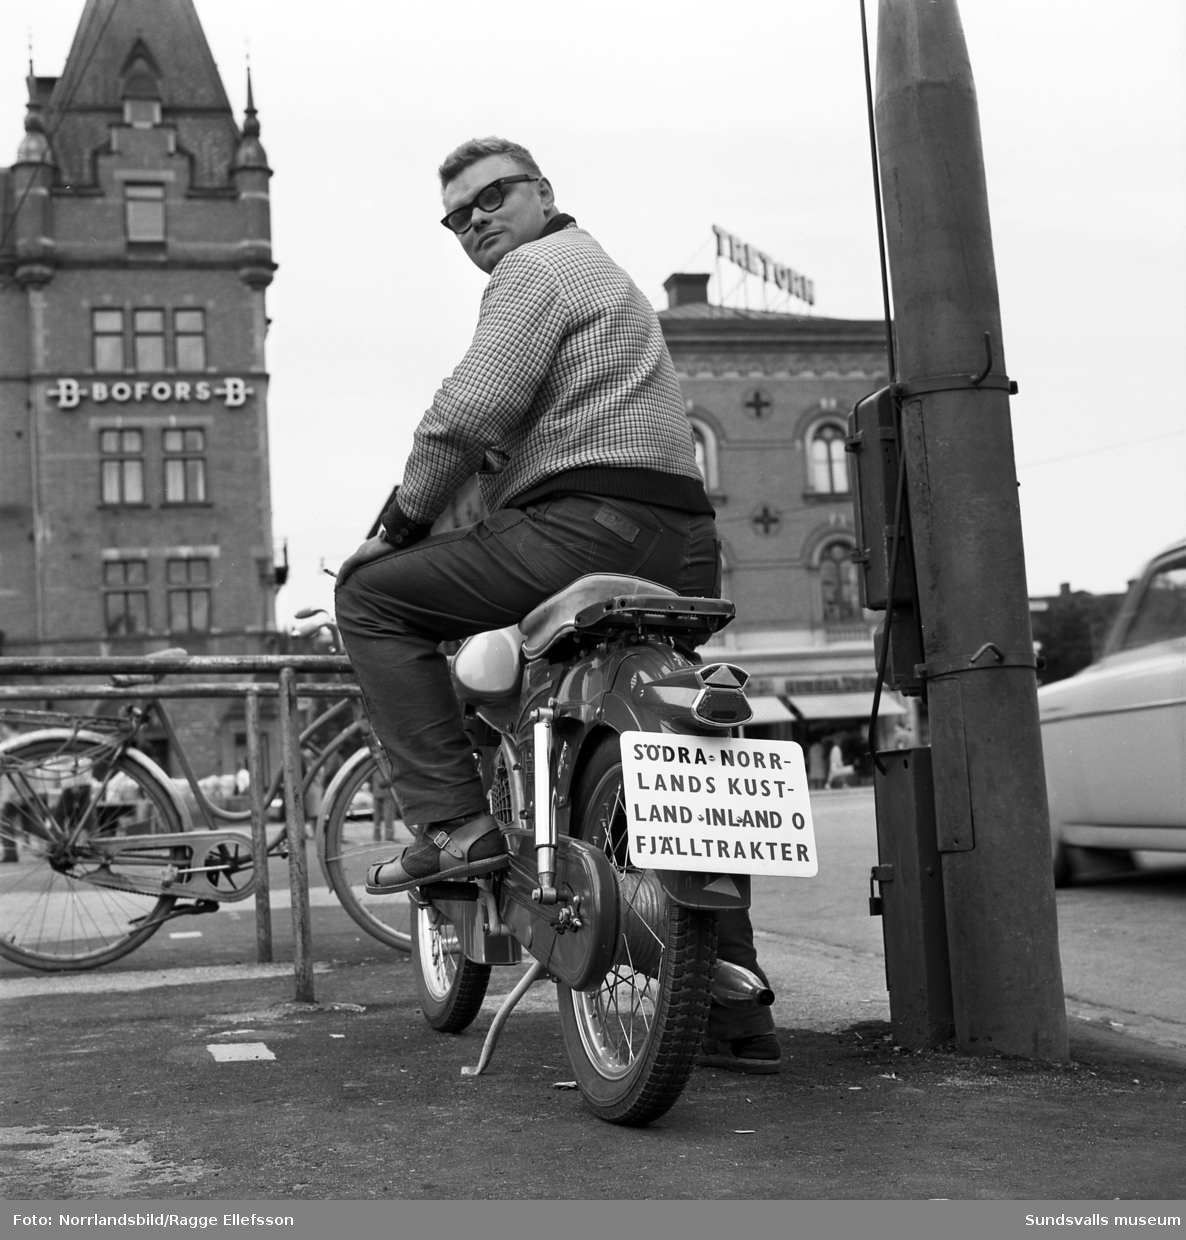 Lennart Berg på torget med sin moped med skylten: "Södra Norrlands kustland inland o fjälltrakter"